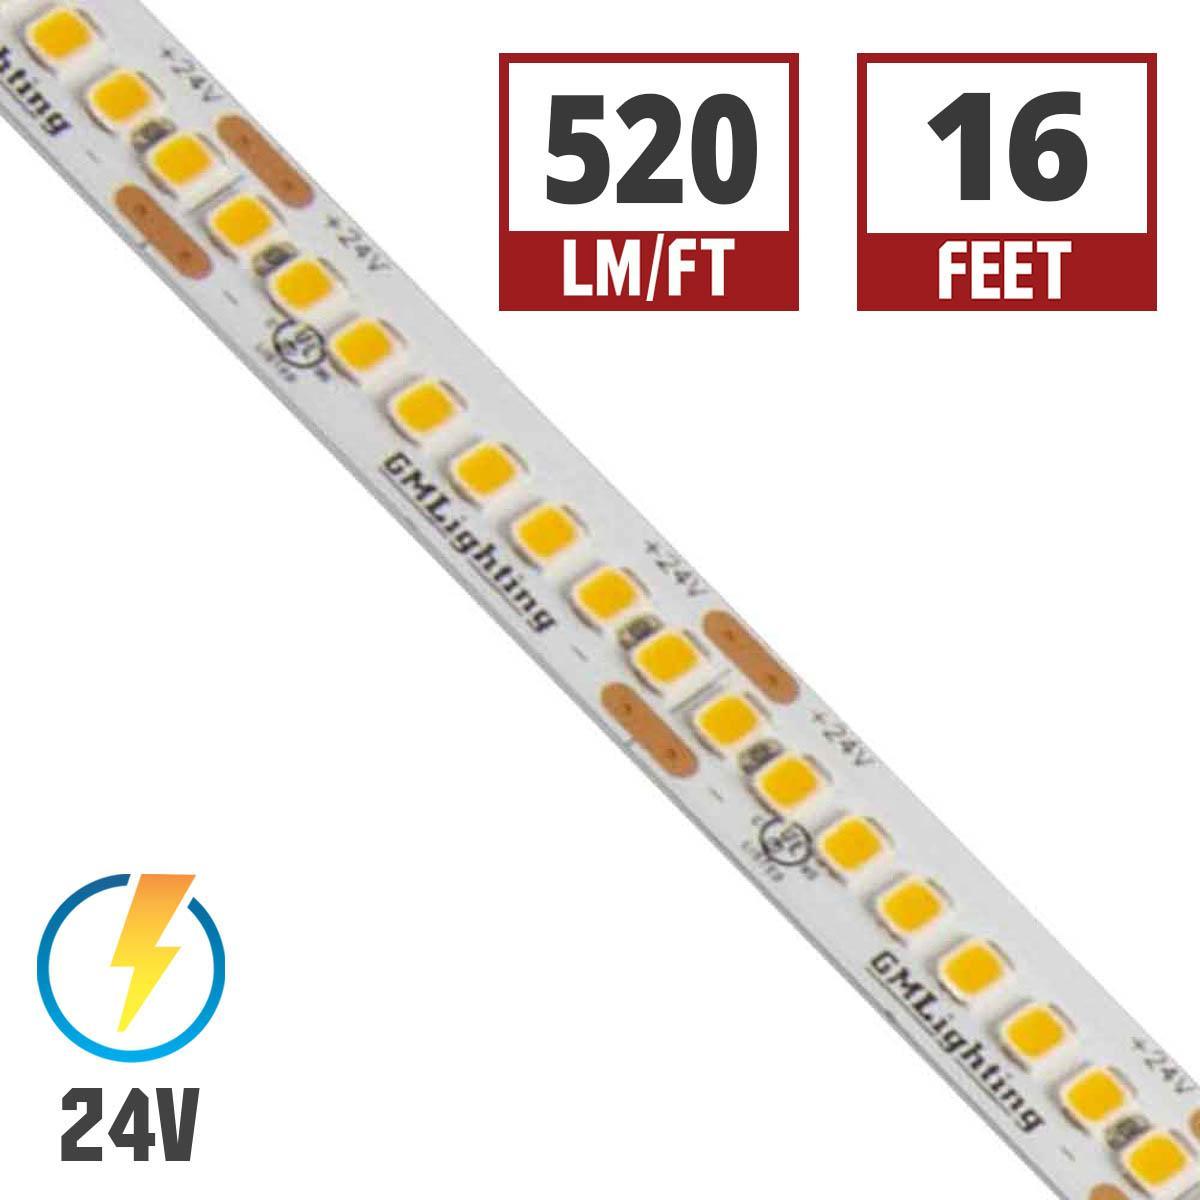 LTR-S Spec LED Strip Light, 510 Lumens per Ft, 5.8 watts per Ft, 24V